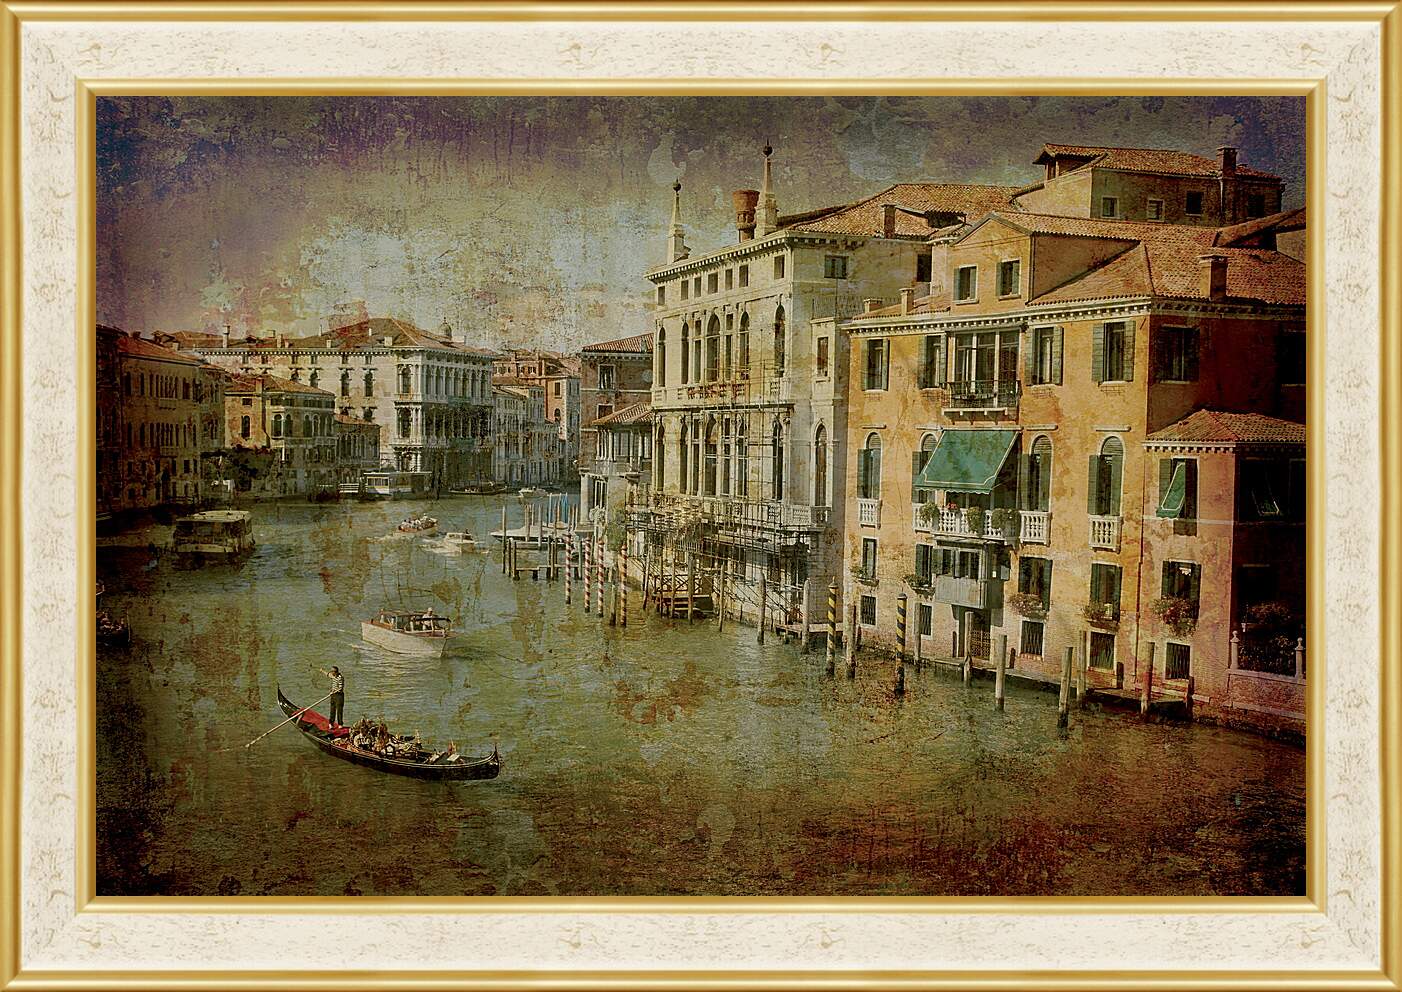 Картина в раме - Италия. Венеция.